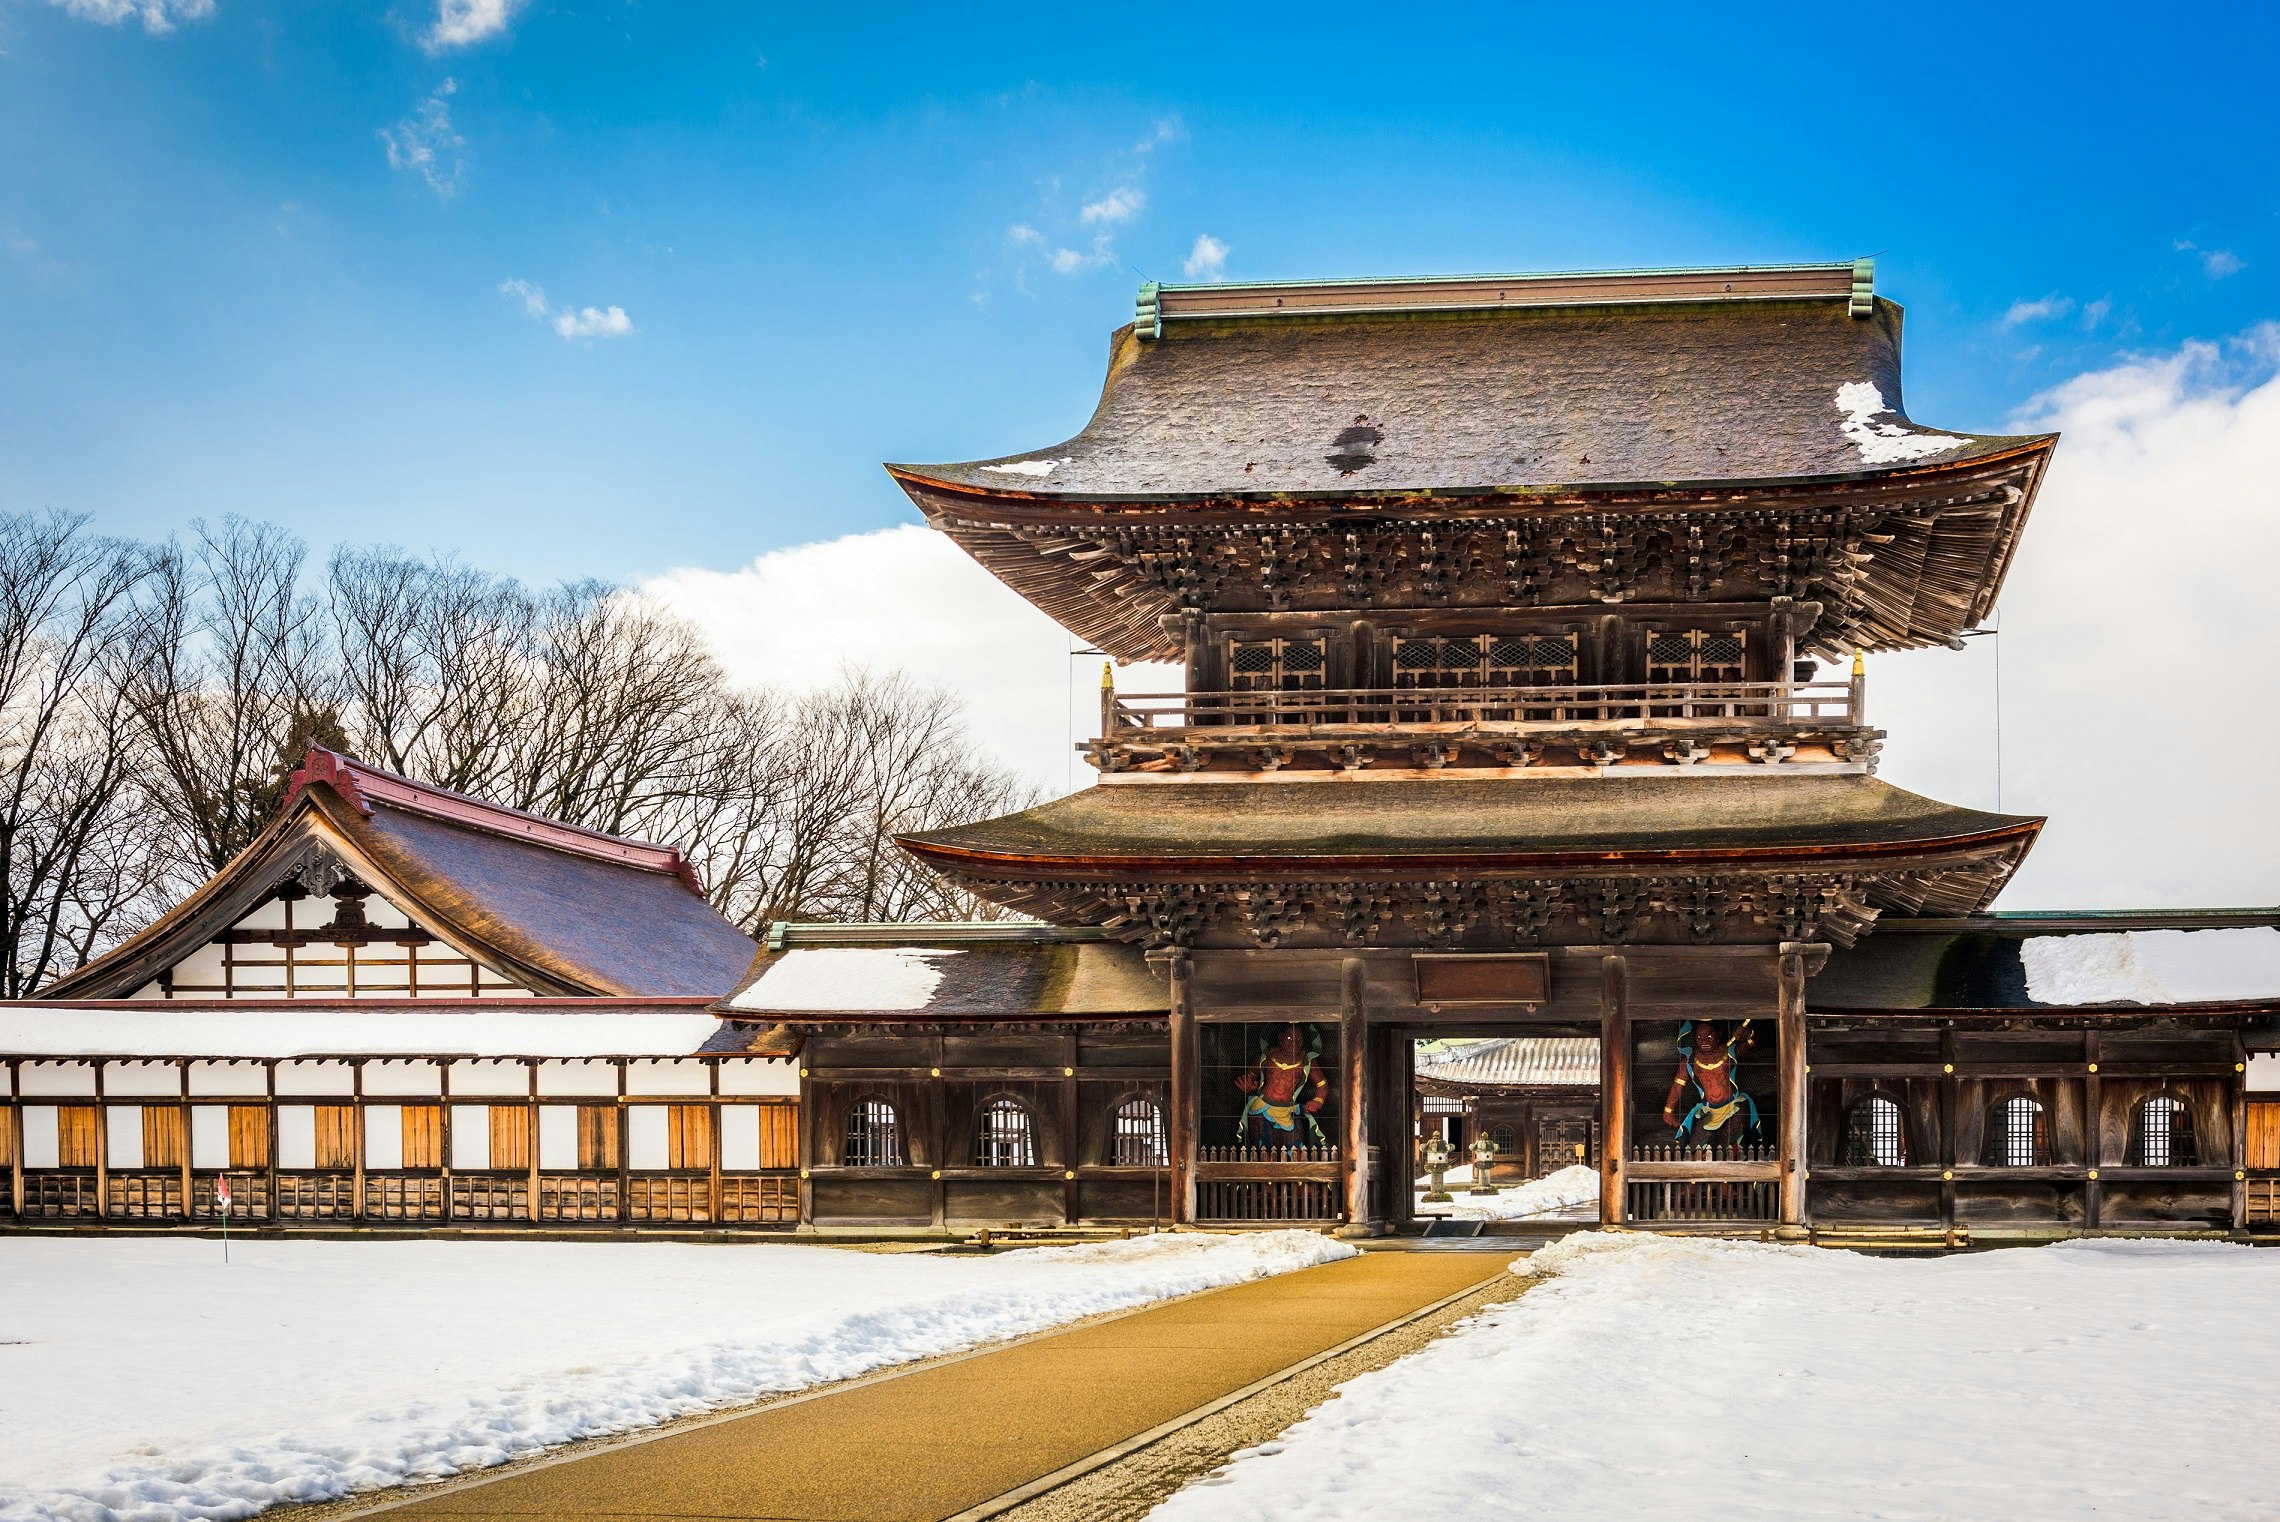 Ett högt och stort trätempel, med ett traditionellt japanskt lutande tak.  Marken runt templet är täckt av snö.